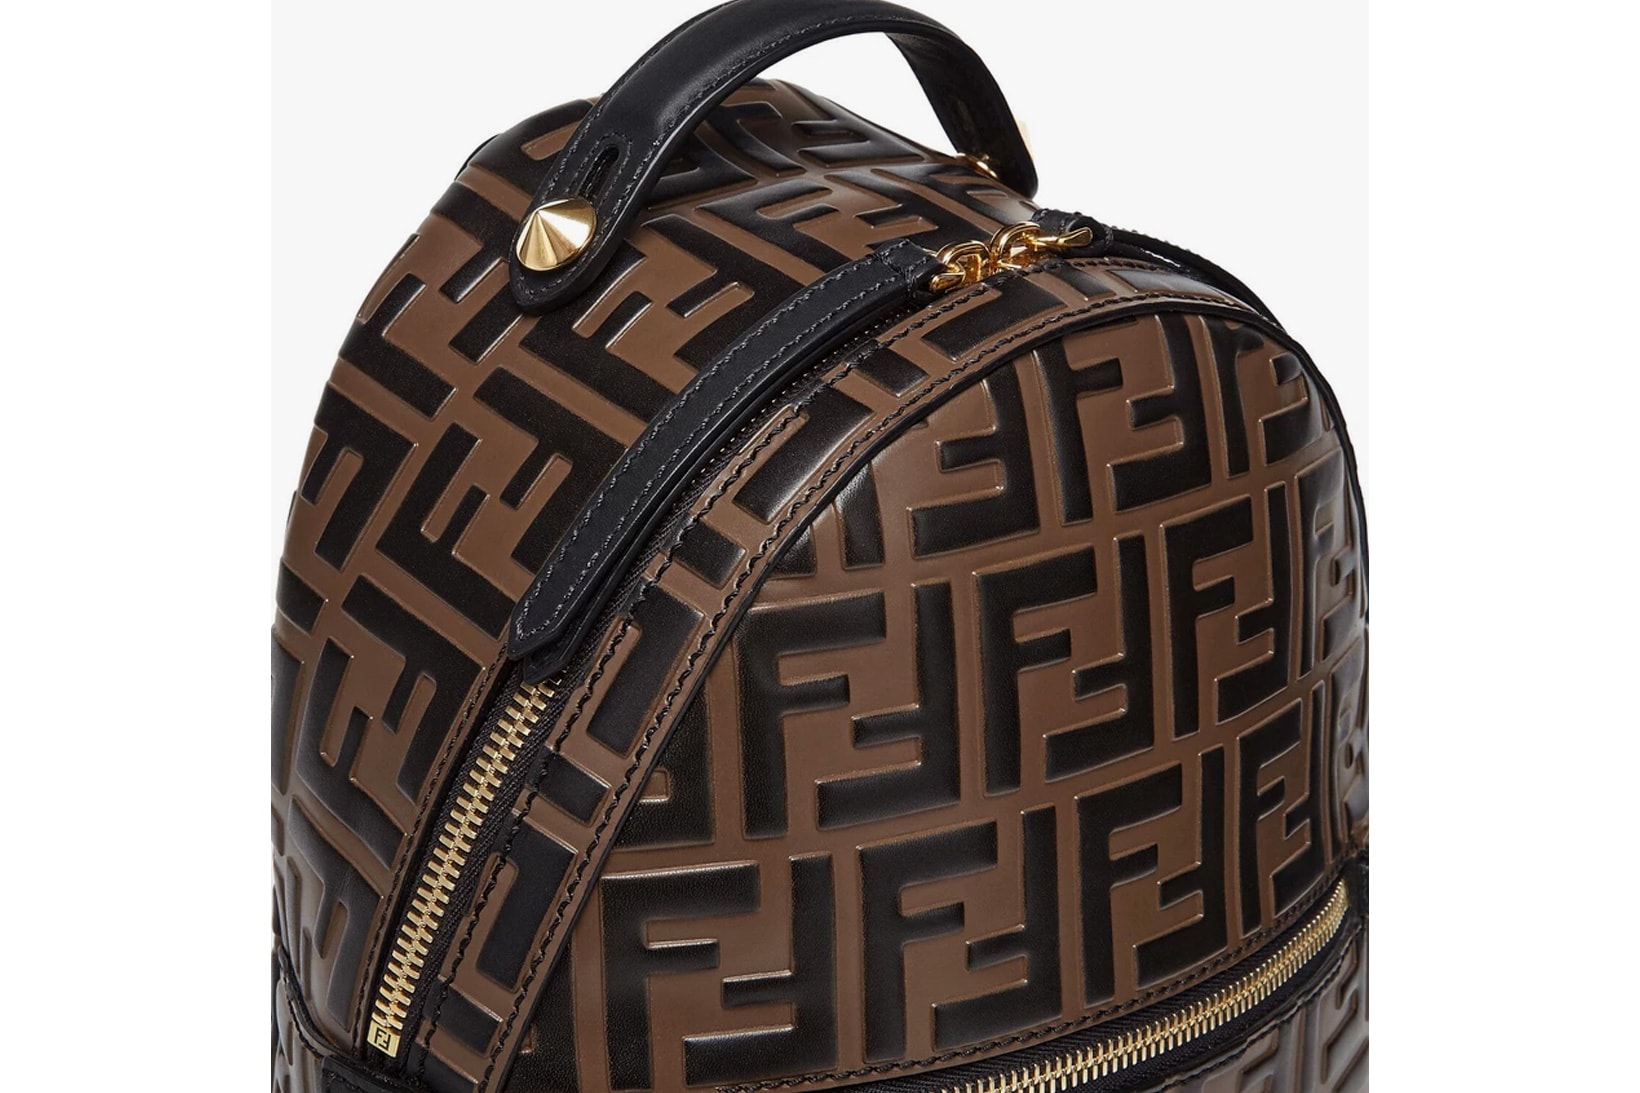 fendi ff monogram logomania mini backpack designer bags brown leather chain fashion accessories price release